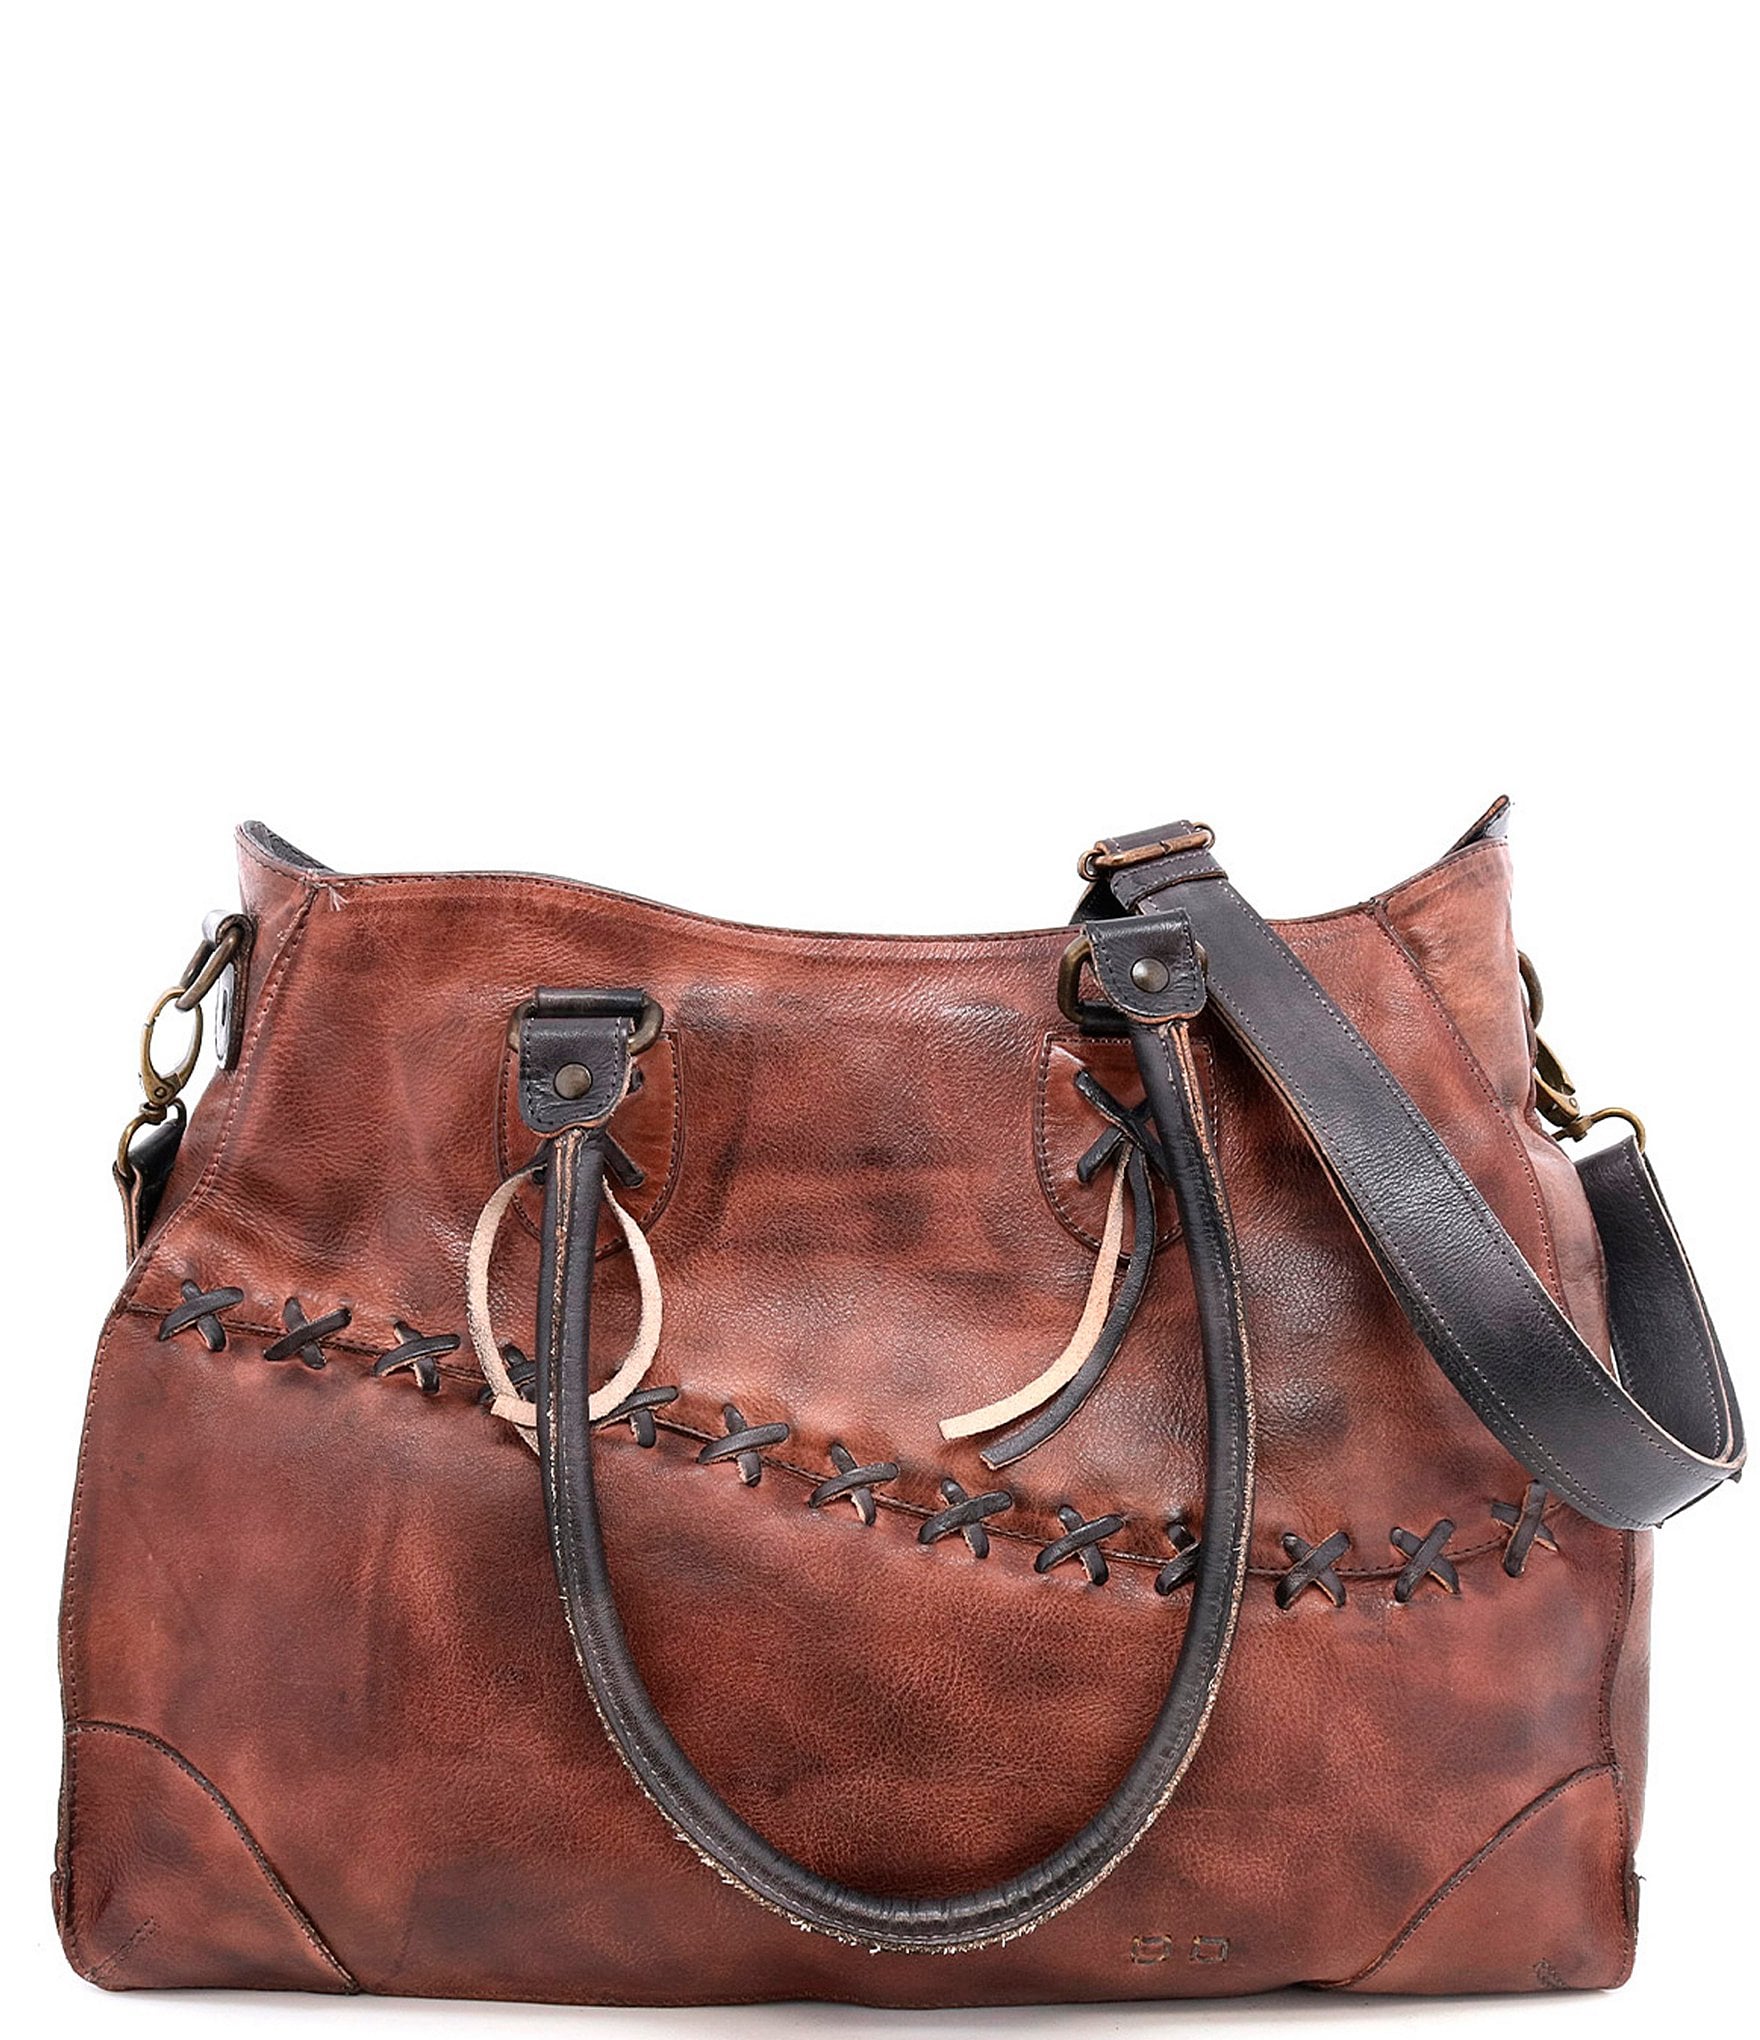 Bed Stu Bruna Stitch Tanned Rustic Leather Satchel Bag | Dillard's